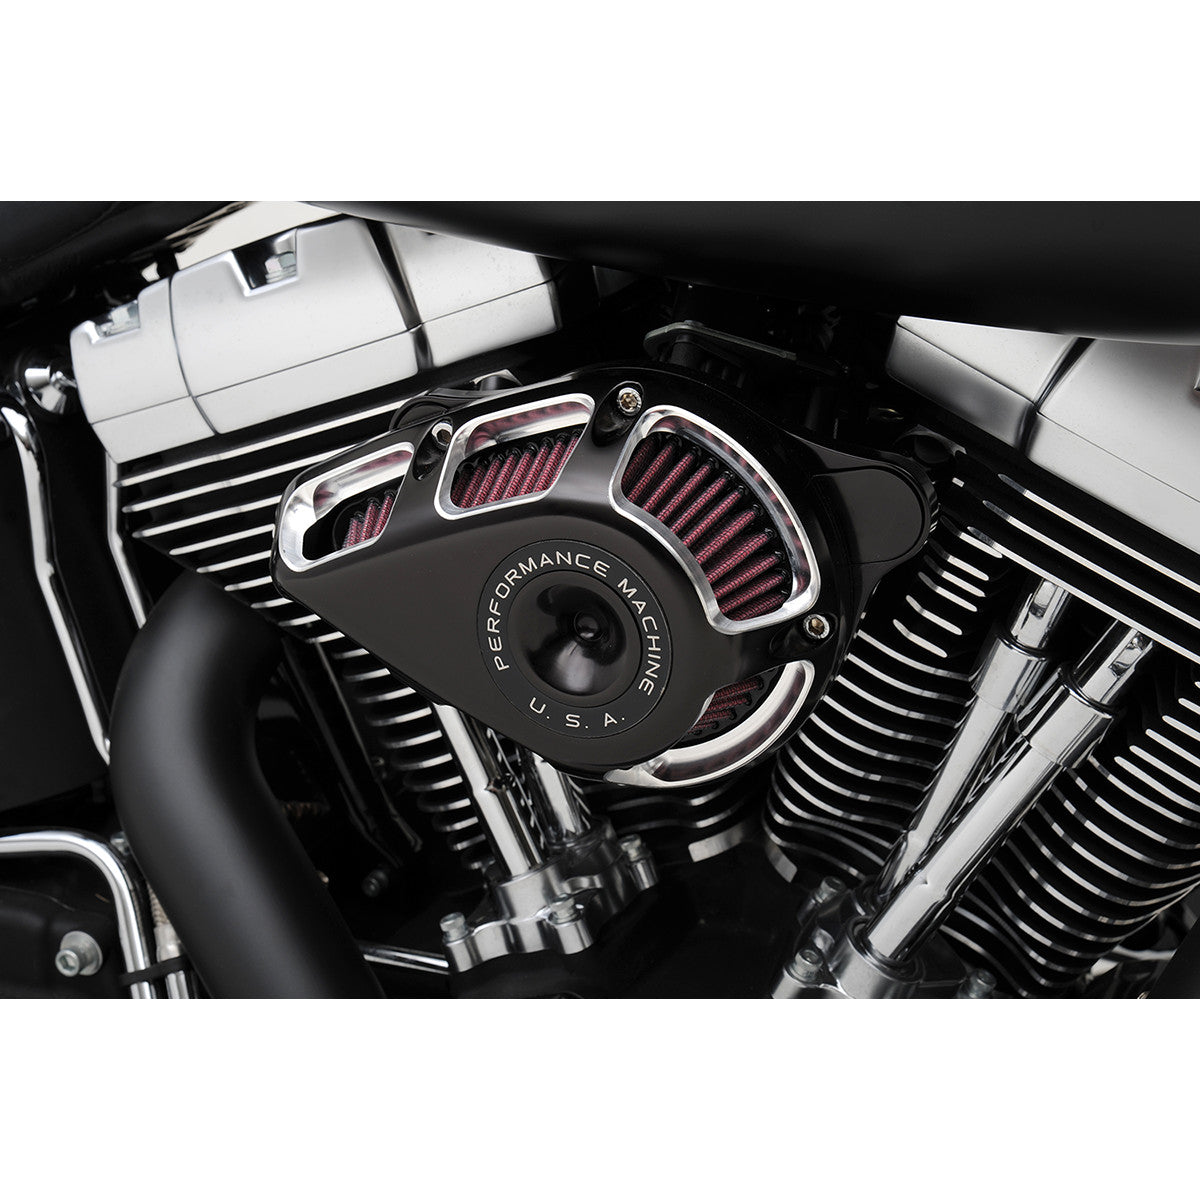 Jet-Luftreiniger für Harley Davidson